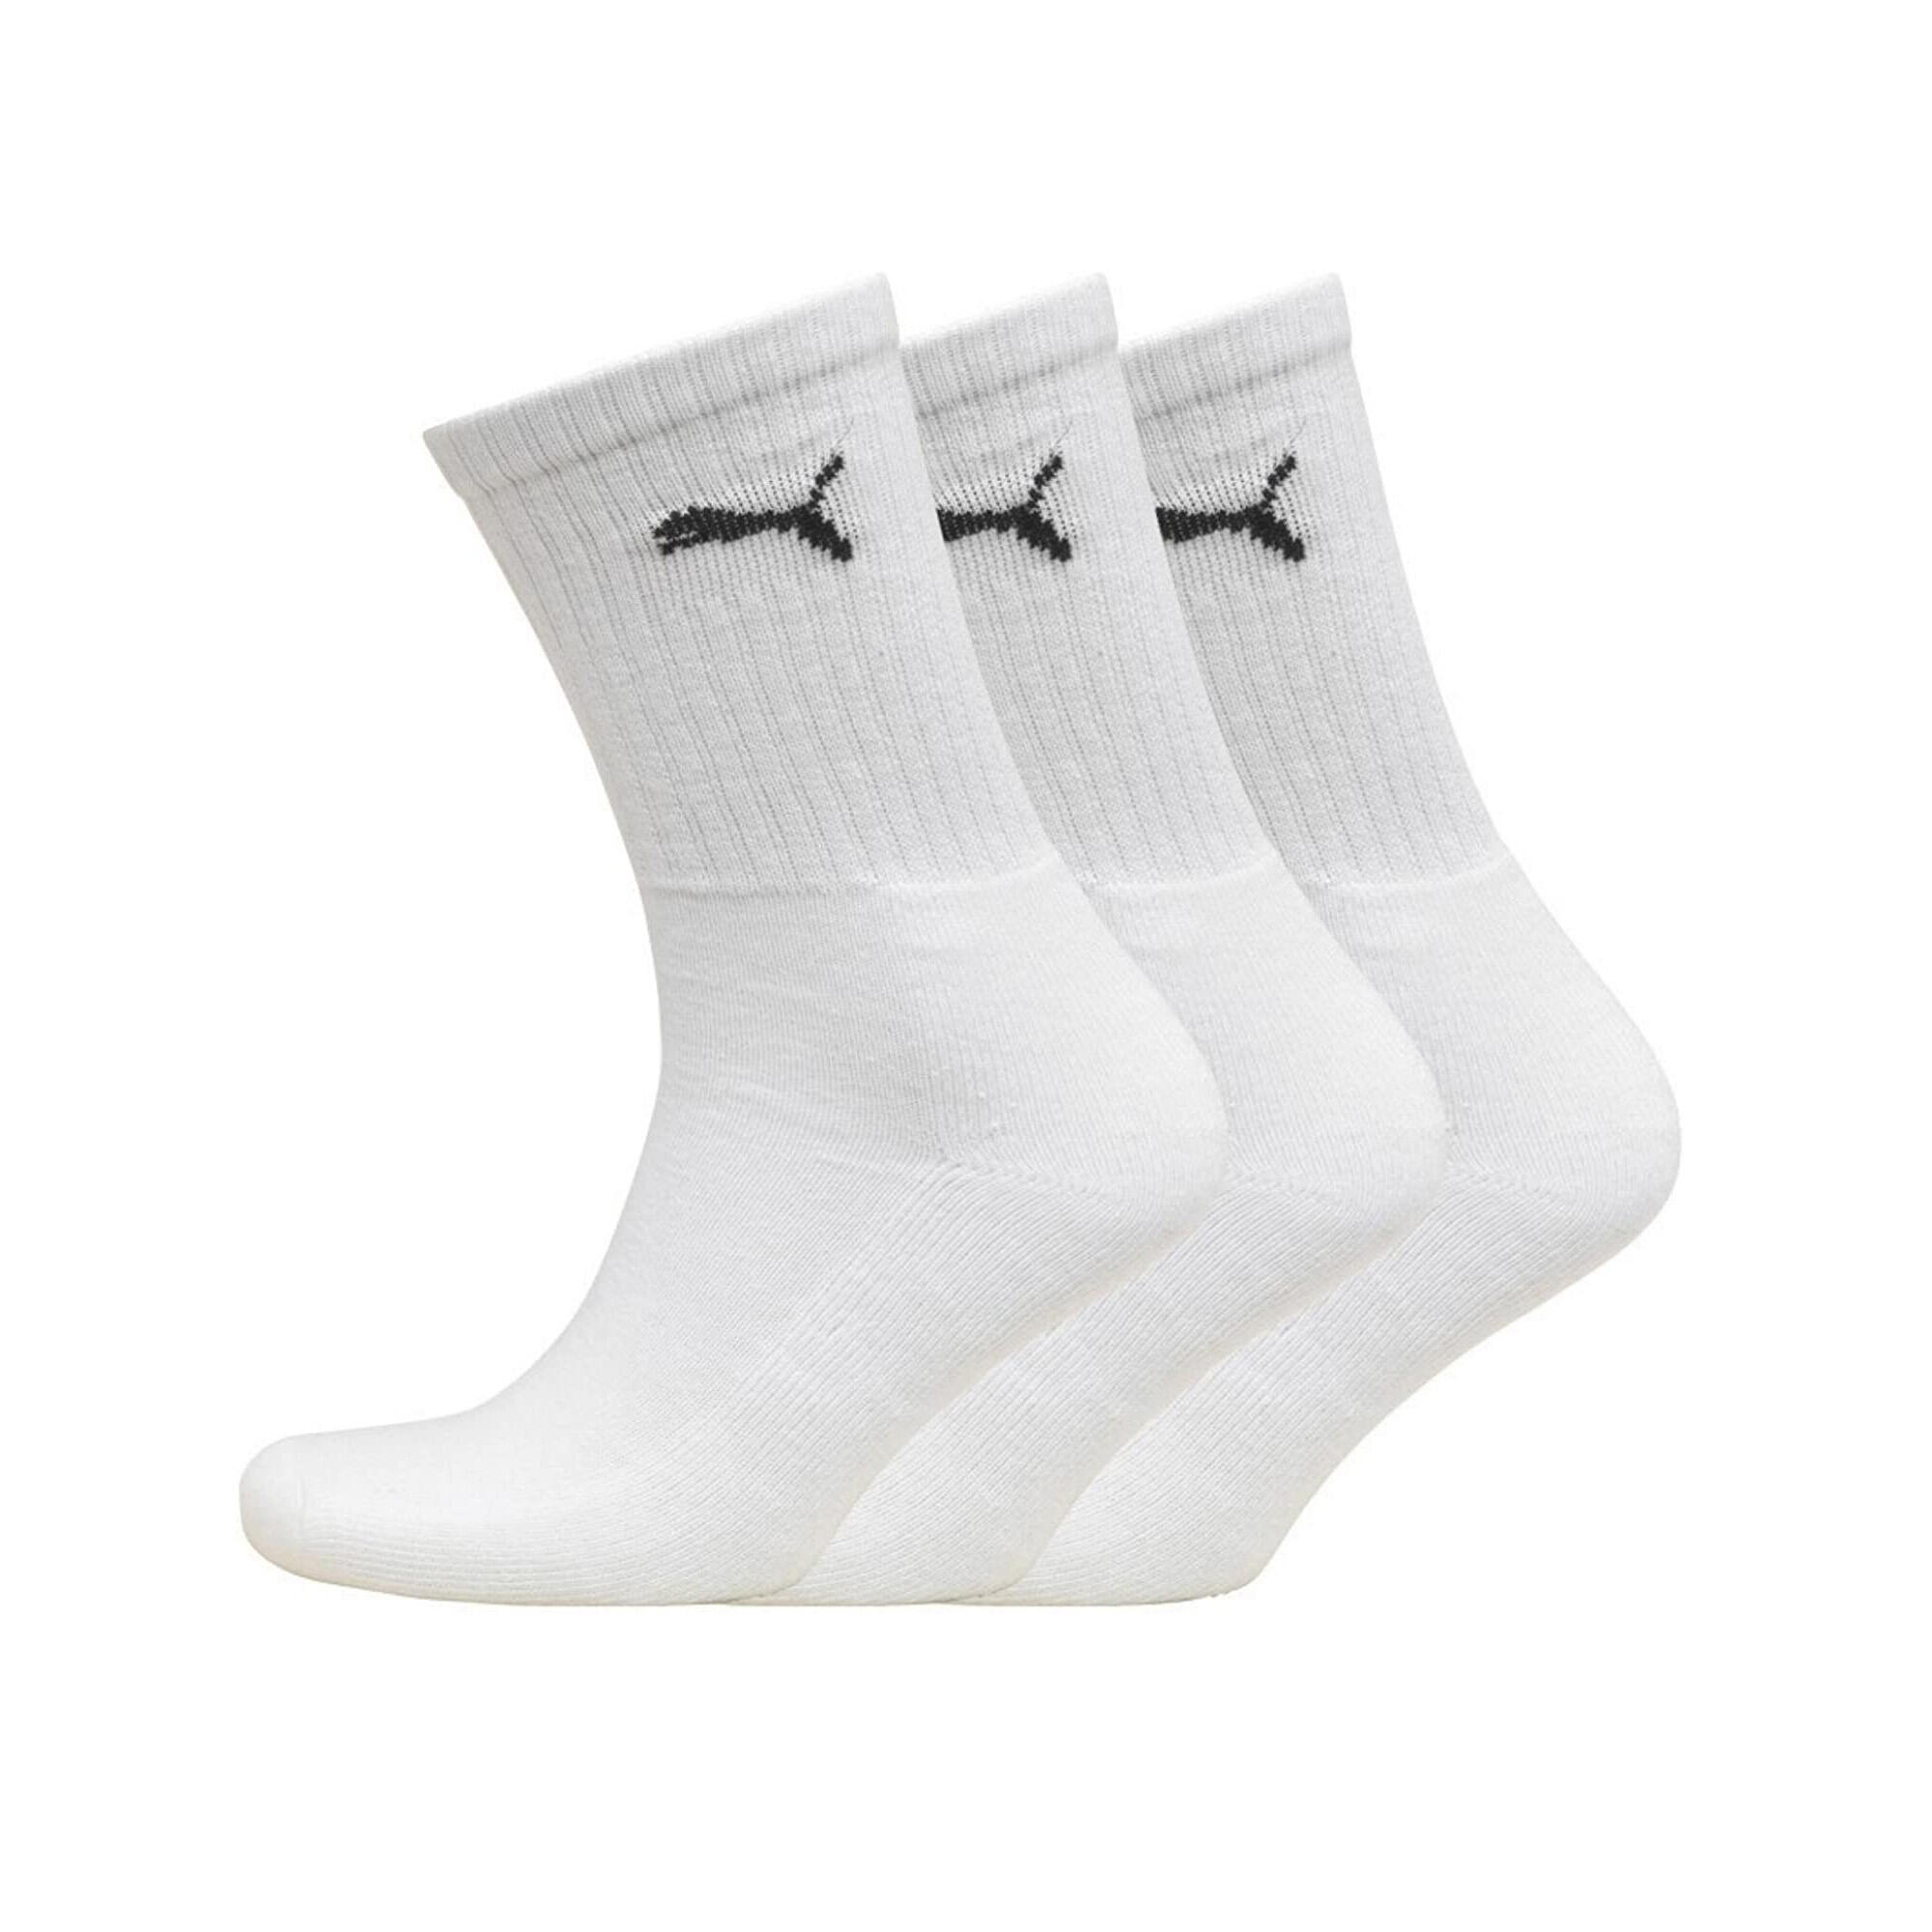 Crew Sport Socks 3 Pair Pack / Mens Socks (White) 1/3